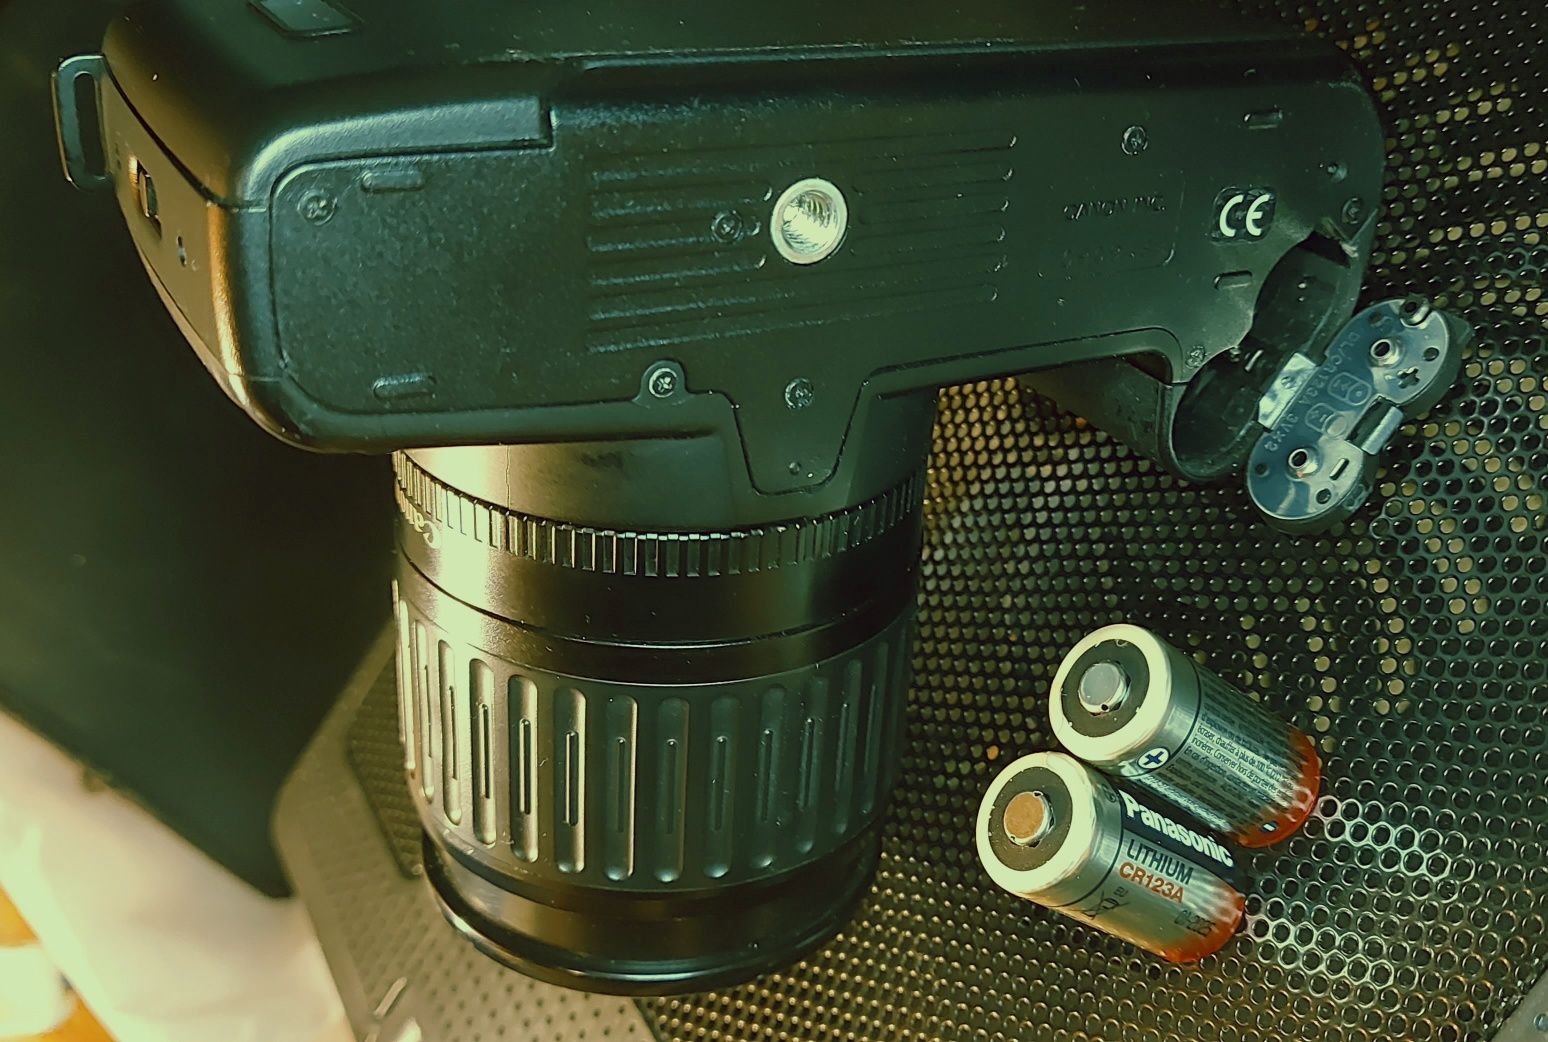 Aparat fotograficzny canon 5000 z obiektywem 35-80mm